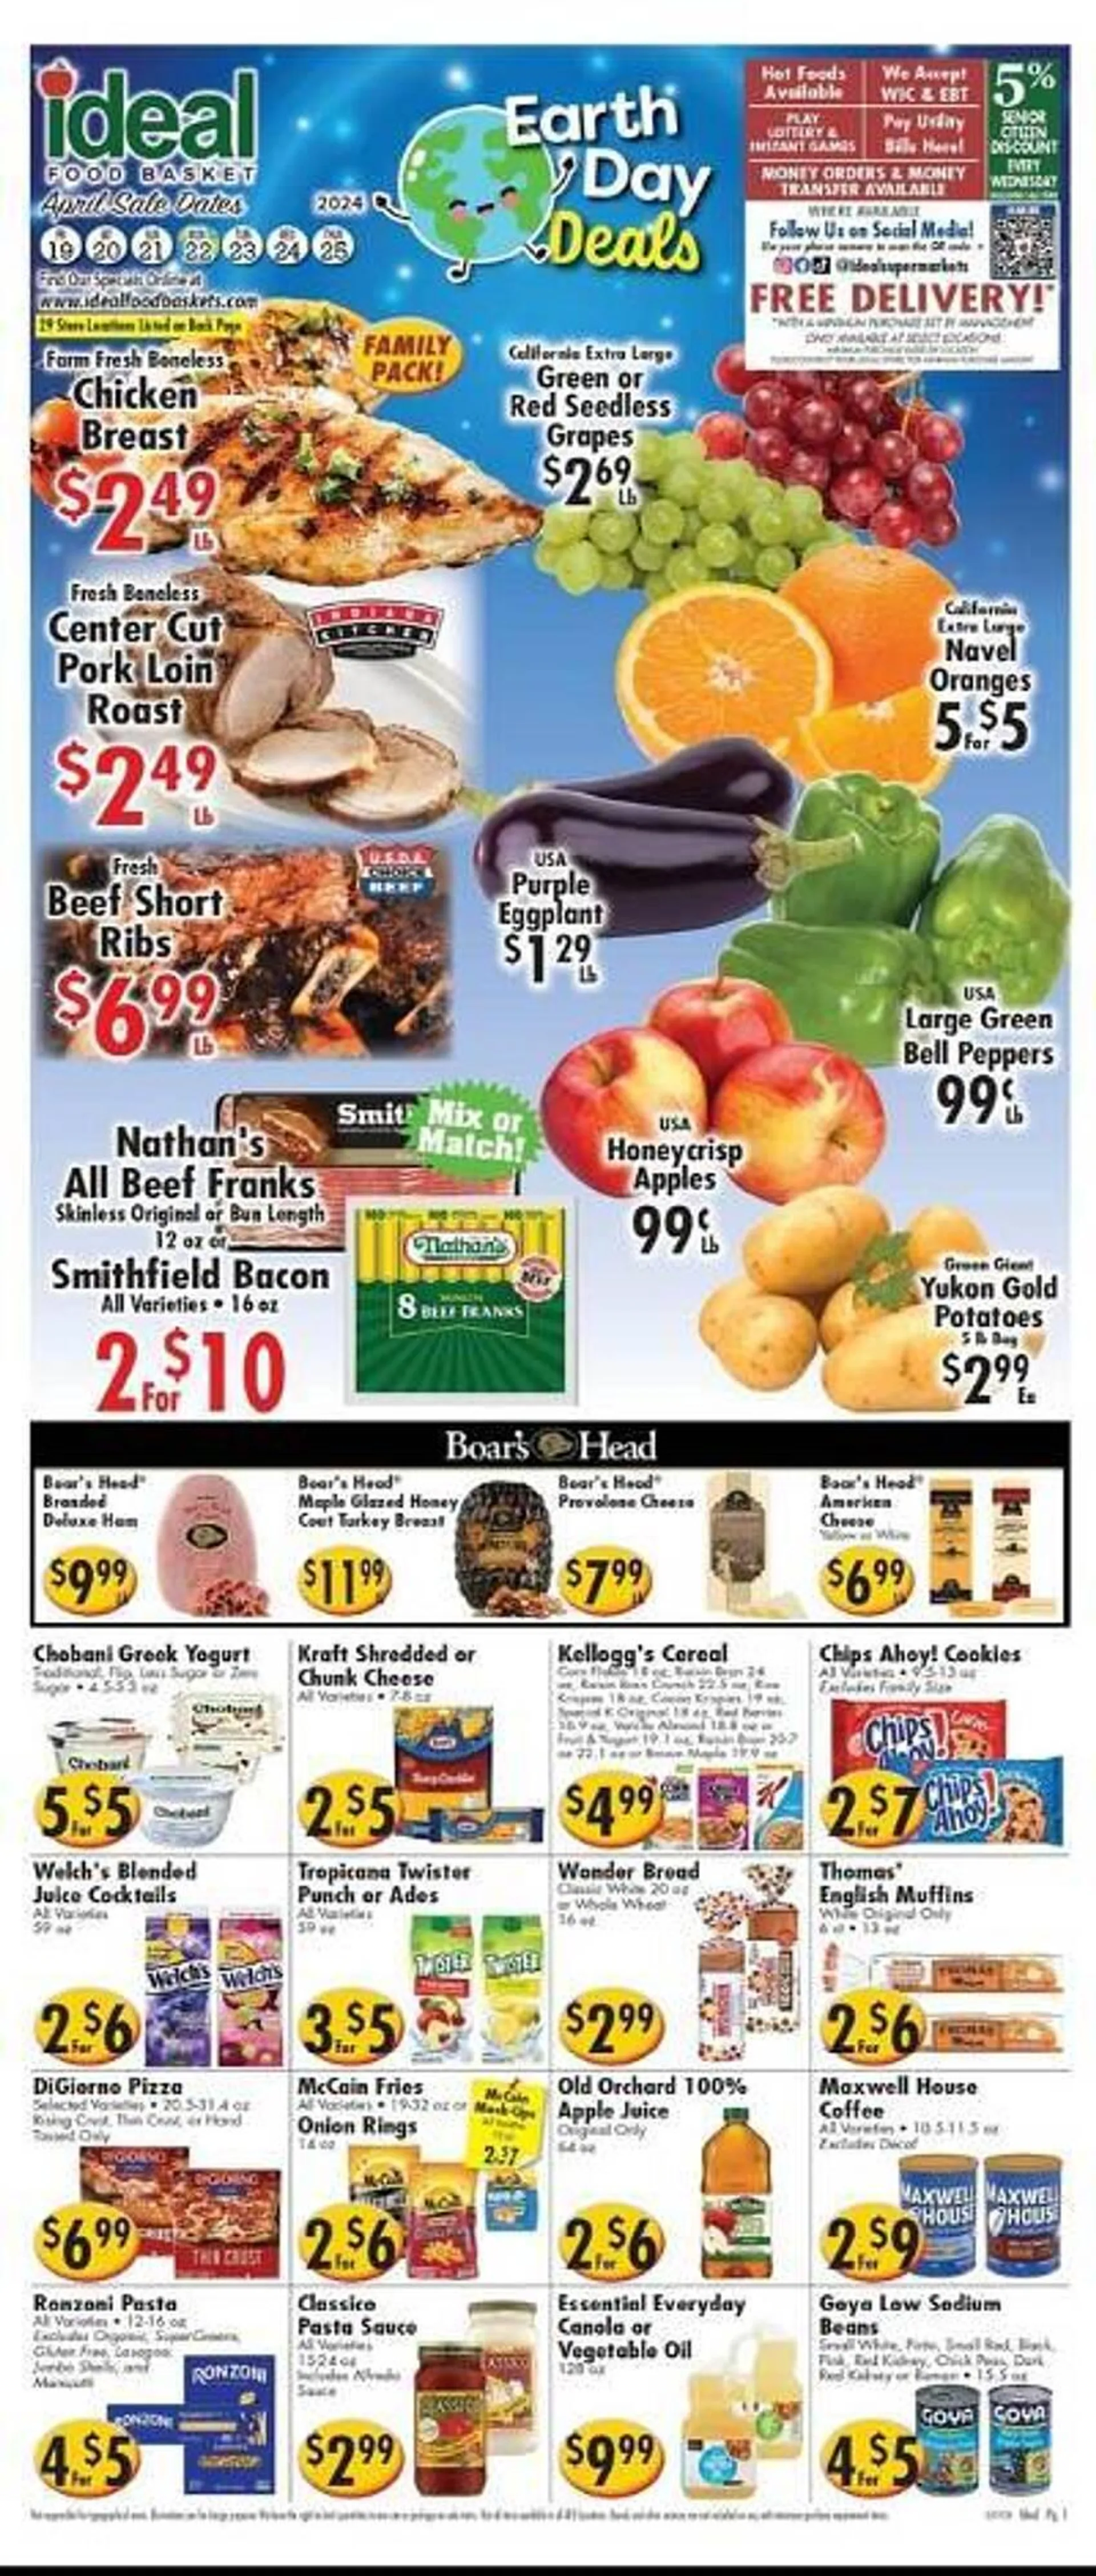 Ideal Food Basket Weekly Ad - 1